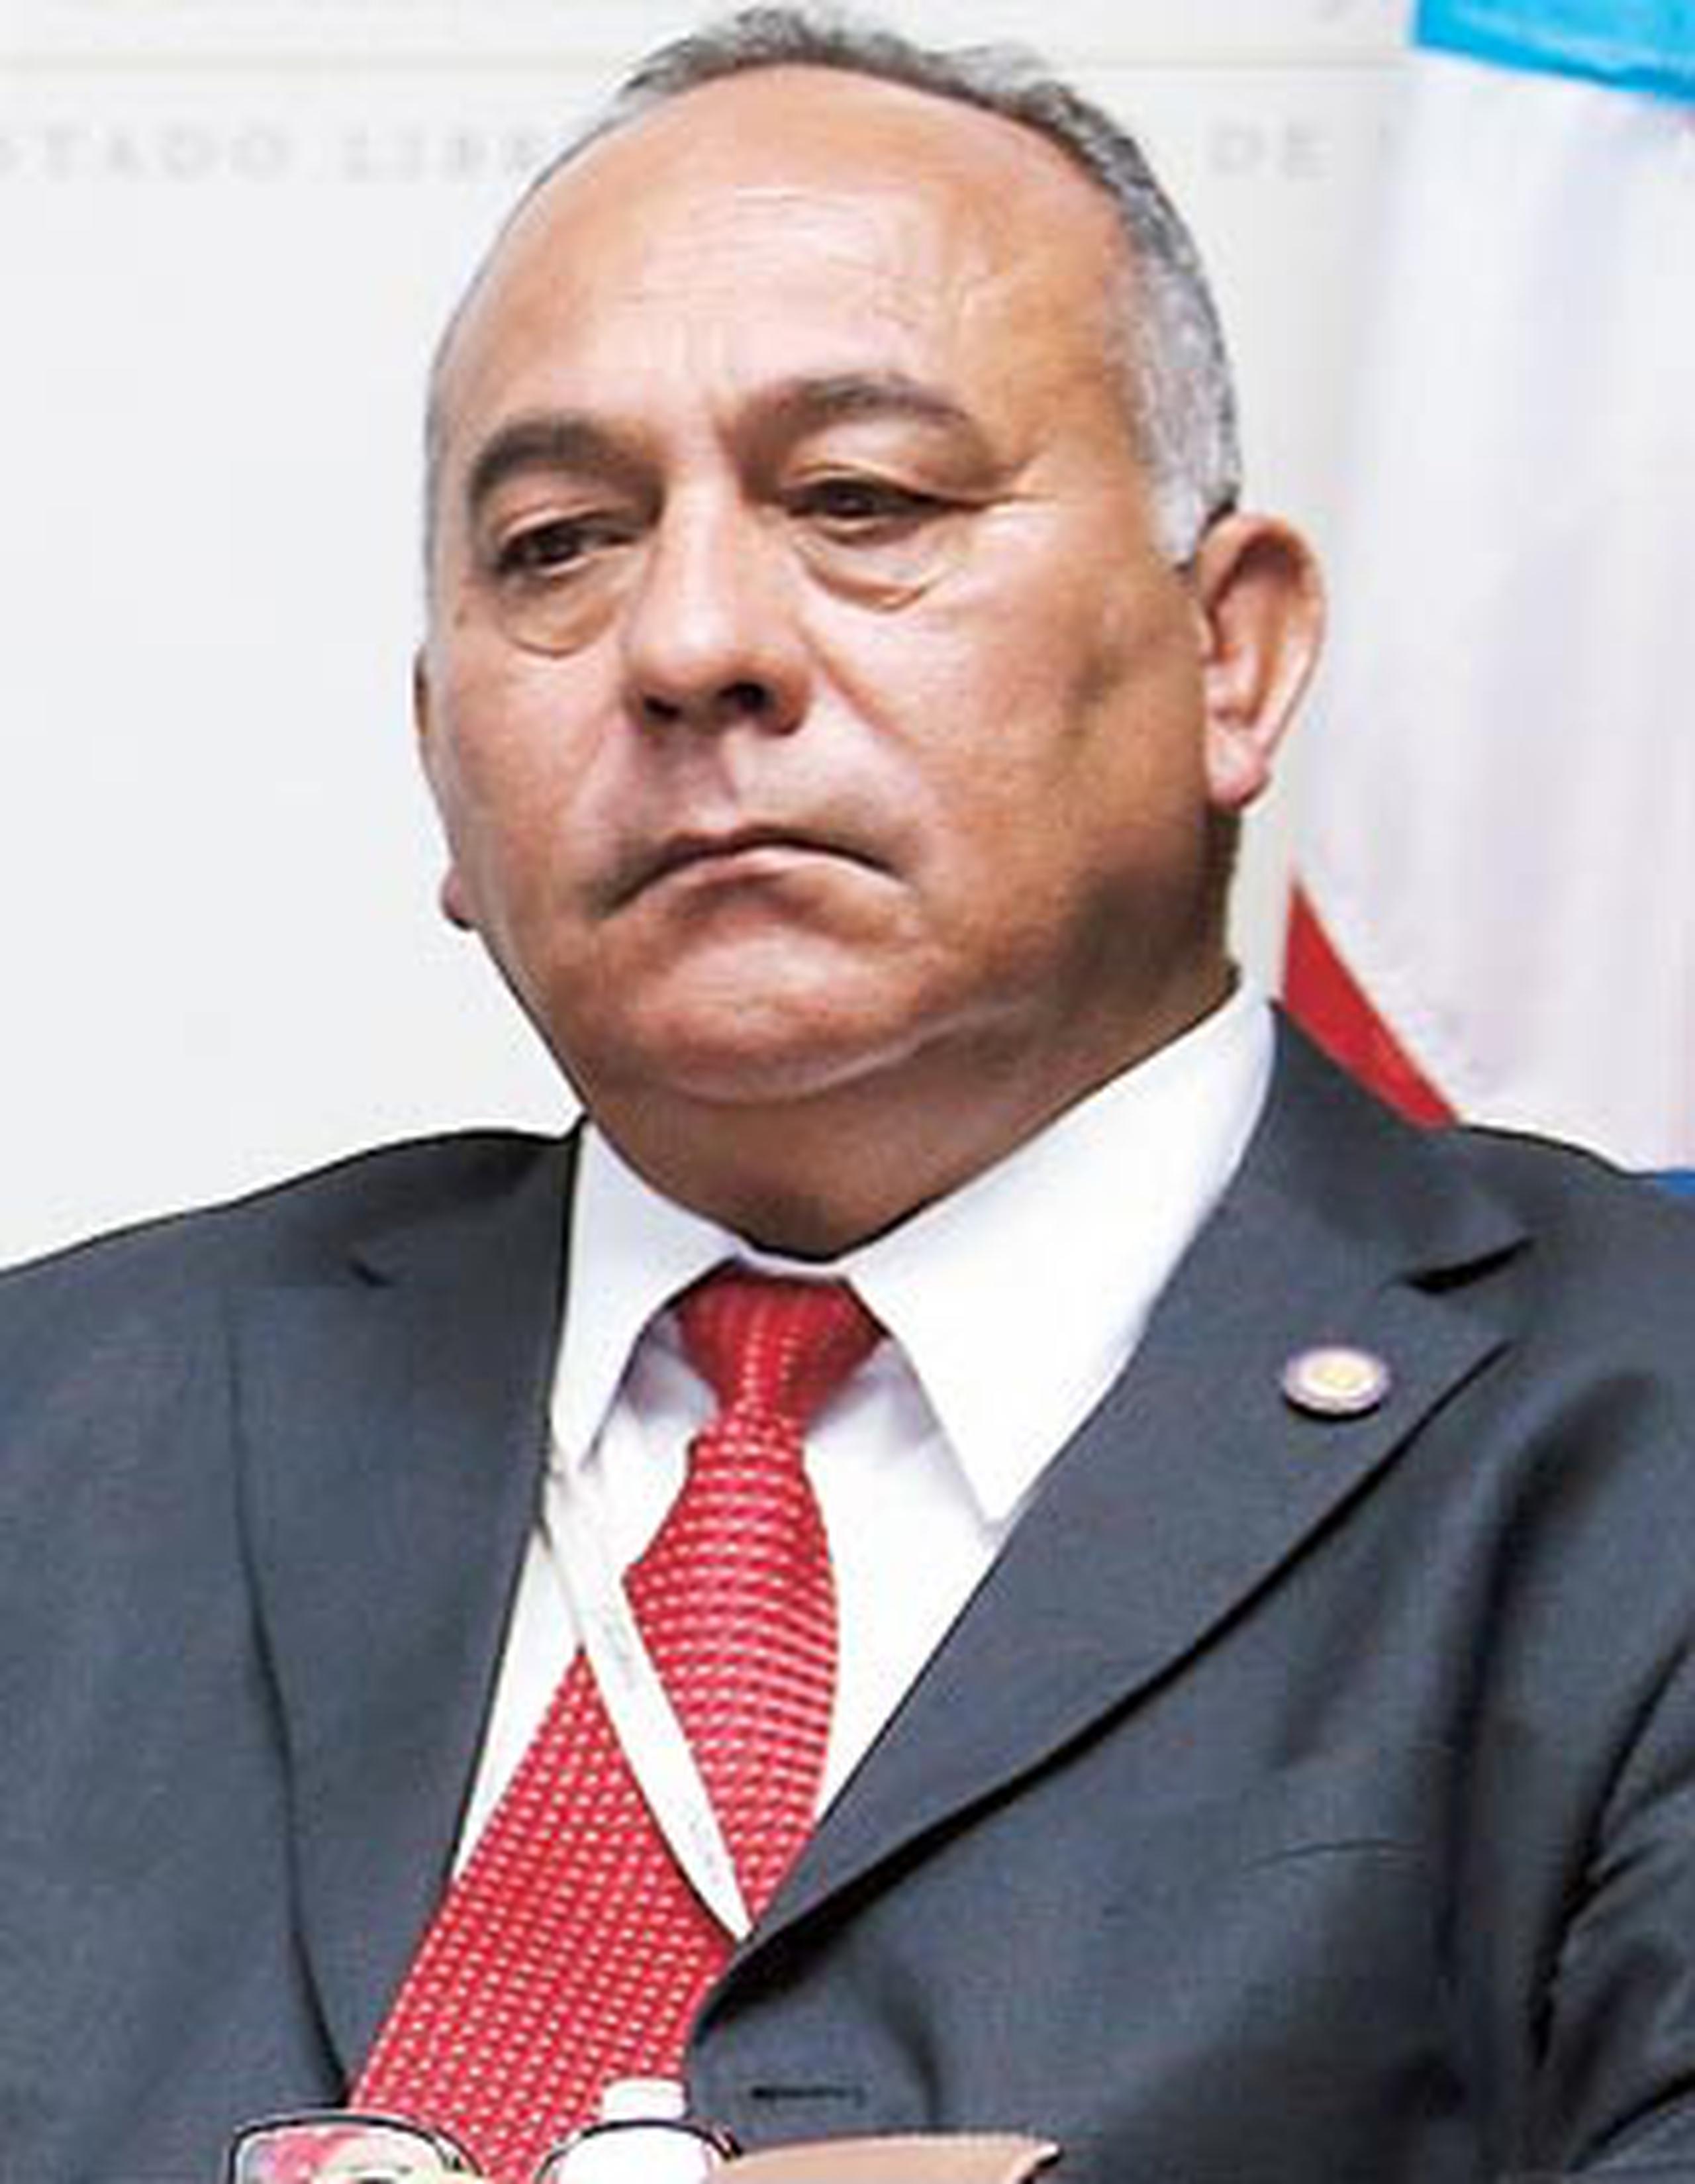 El fiscal general José Capó calificó las alegaciones como libelosas y dio la bienvenida a la investigación. (Archivo)